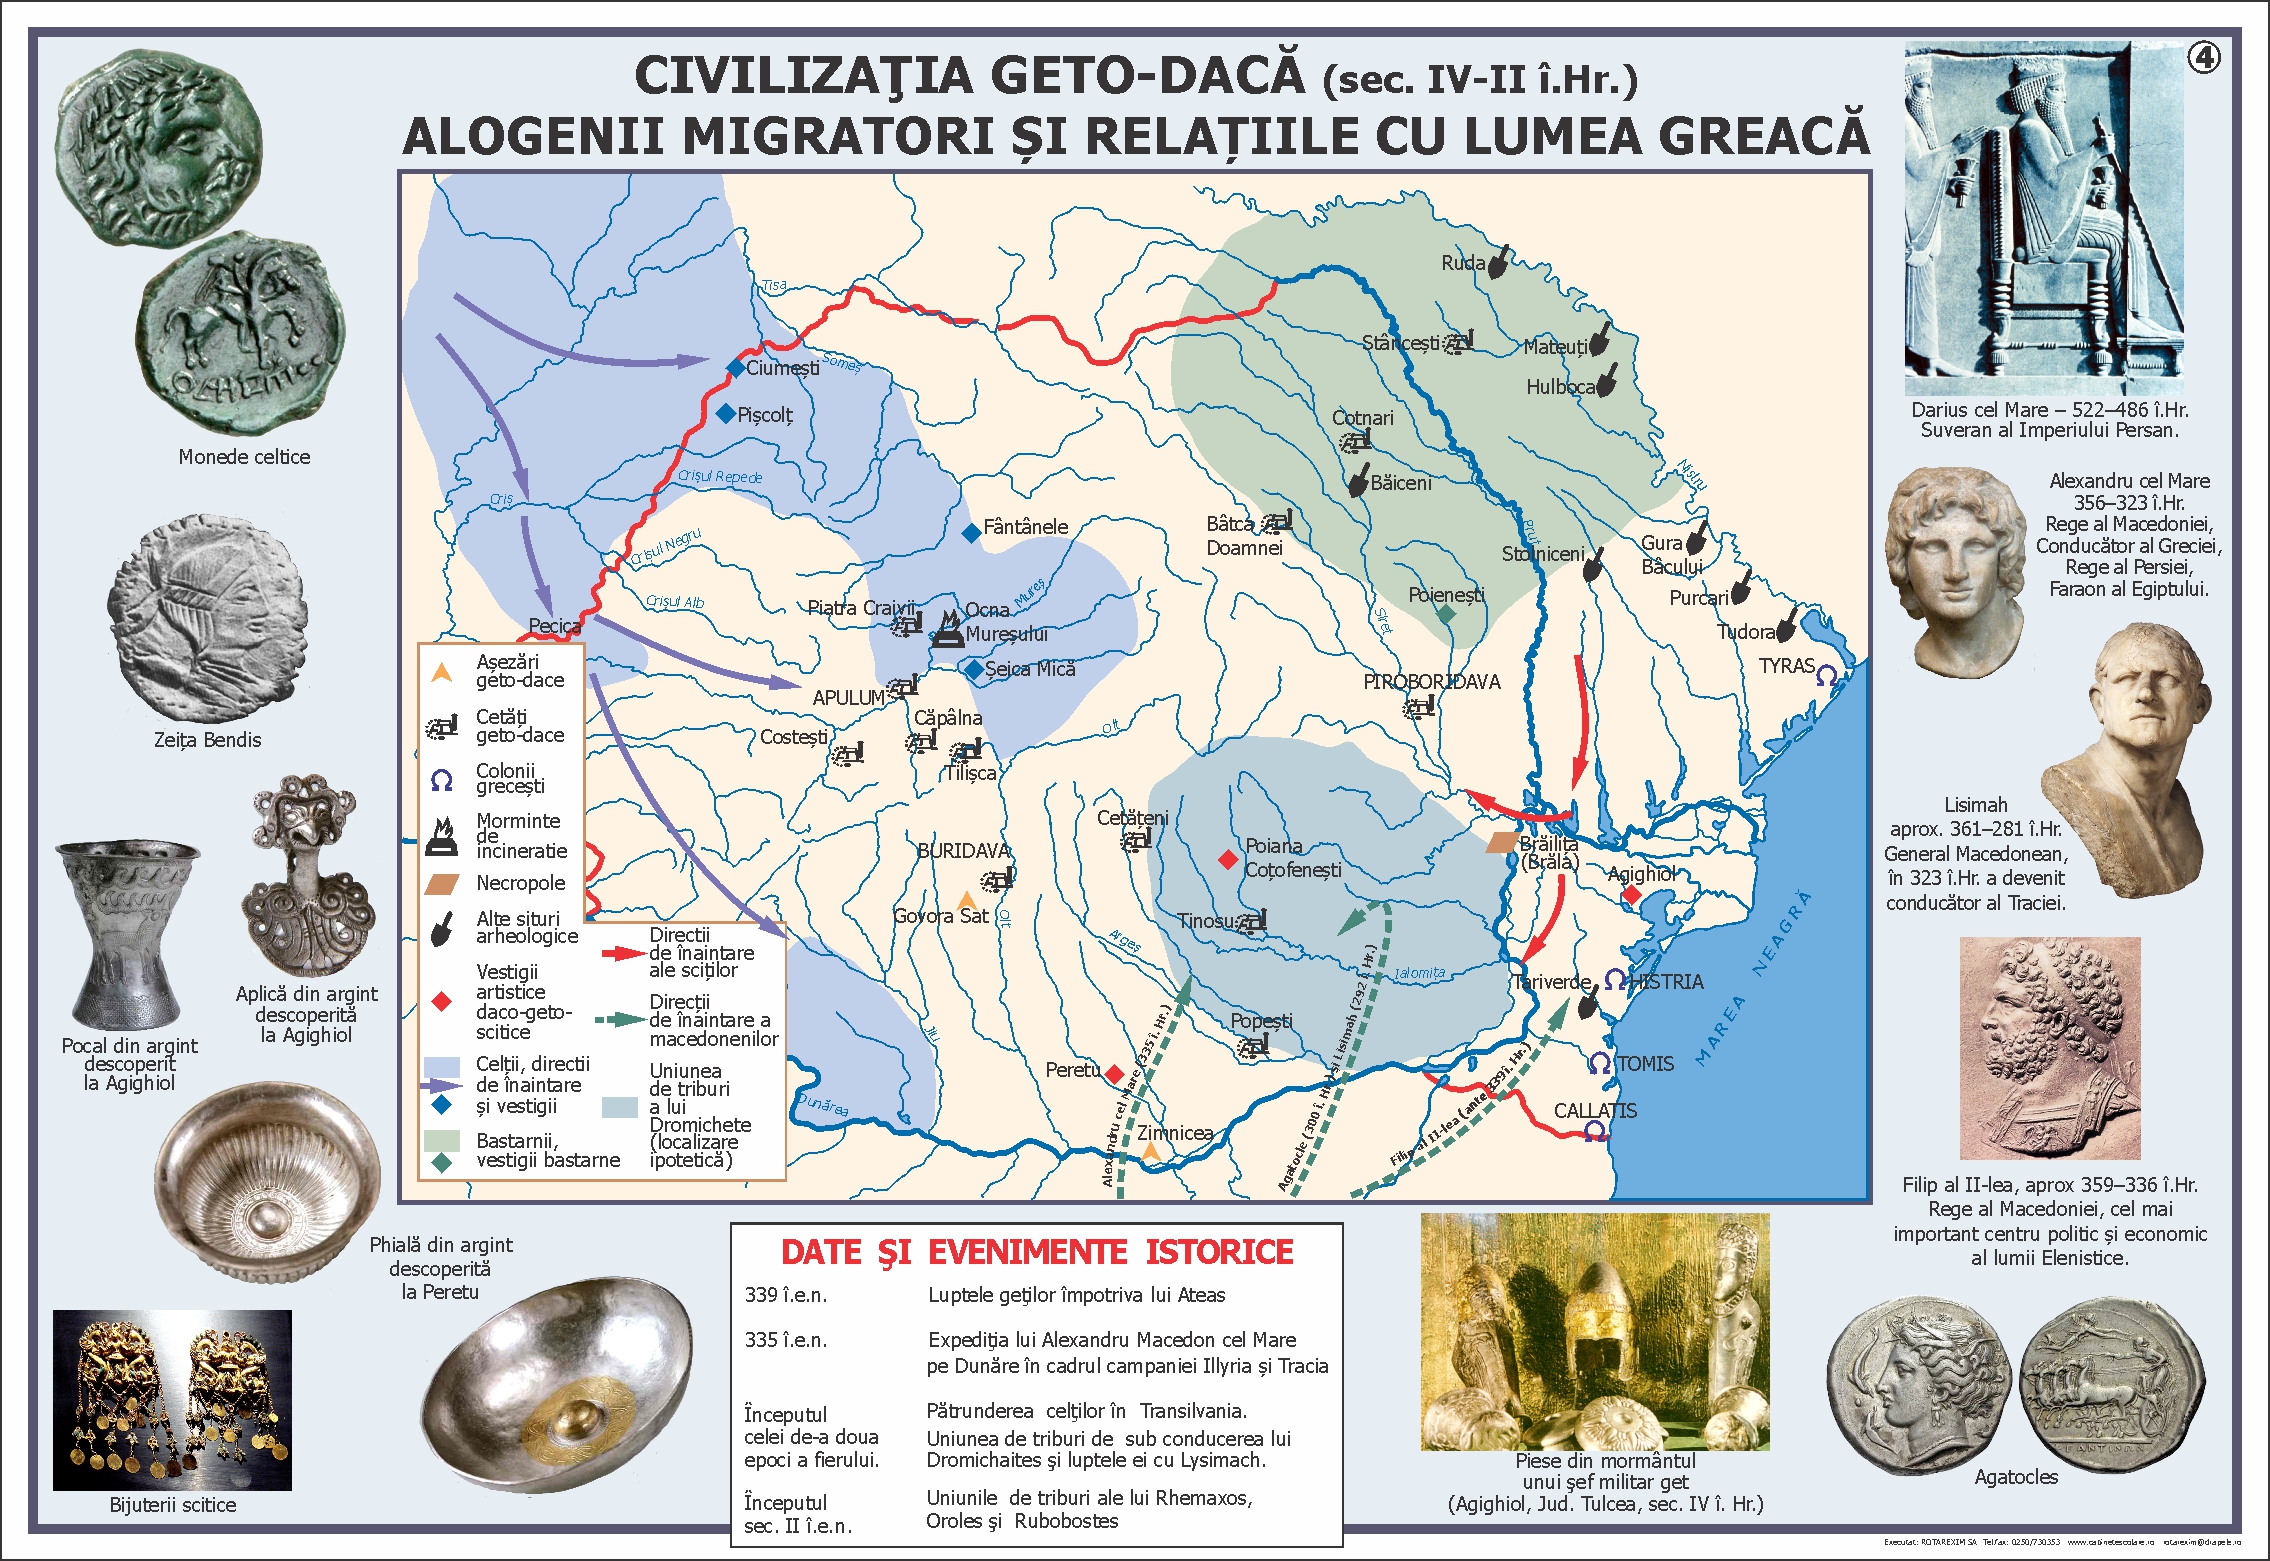 Civilizatia geto-daca (sec. IV-II i. Hr.)